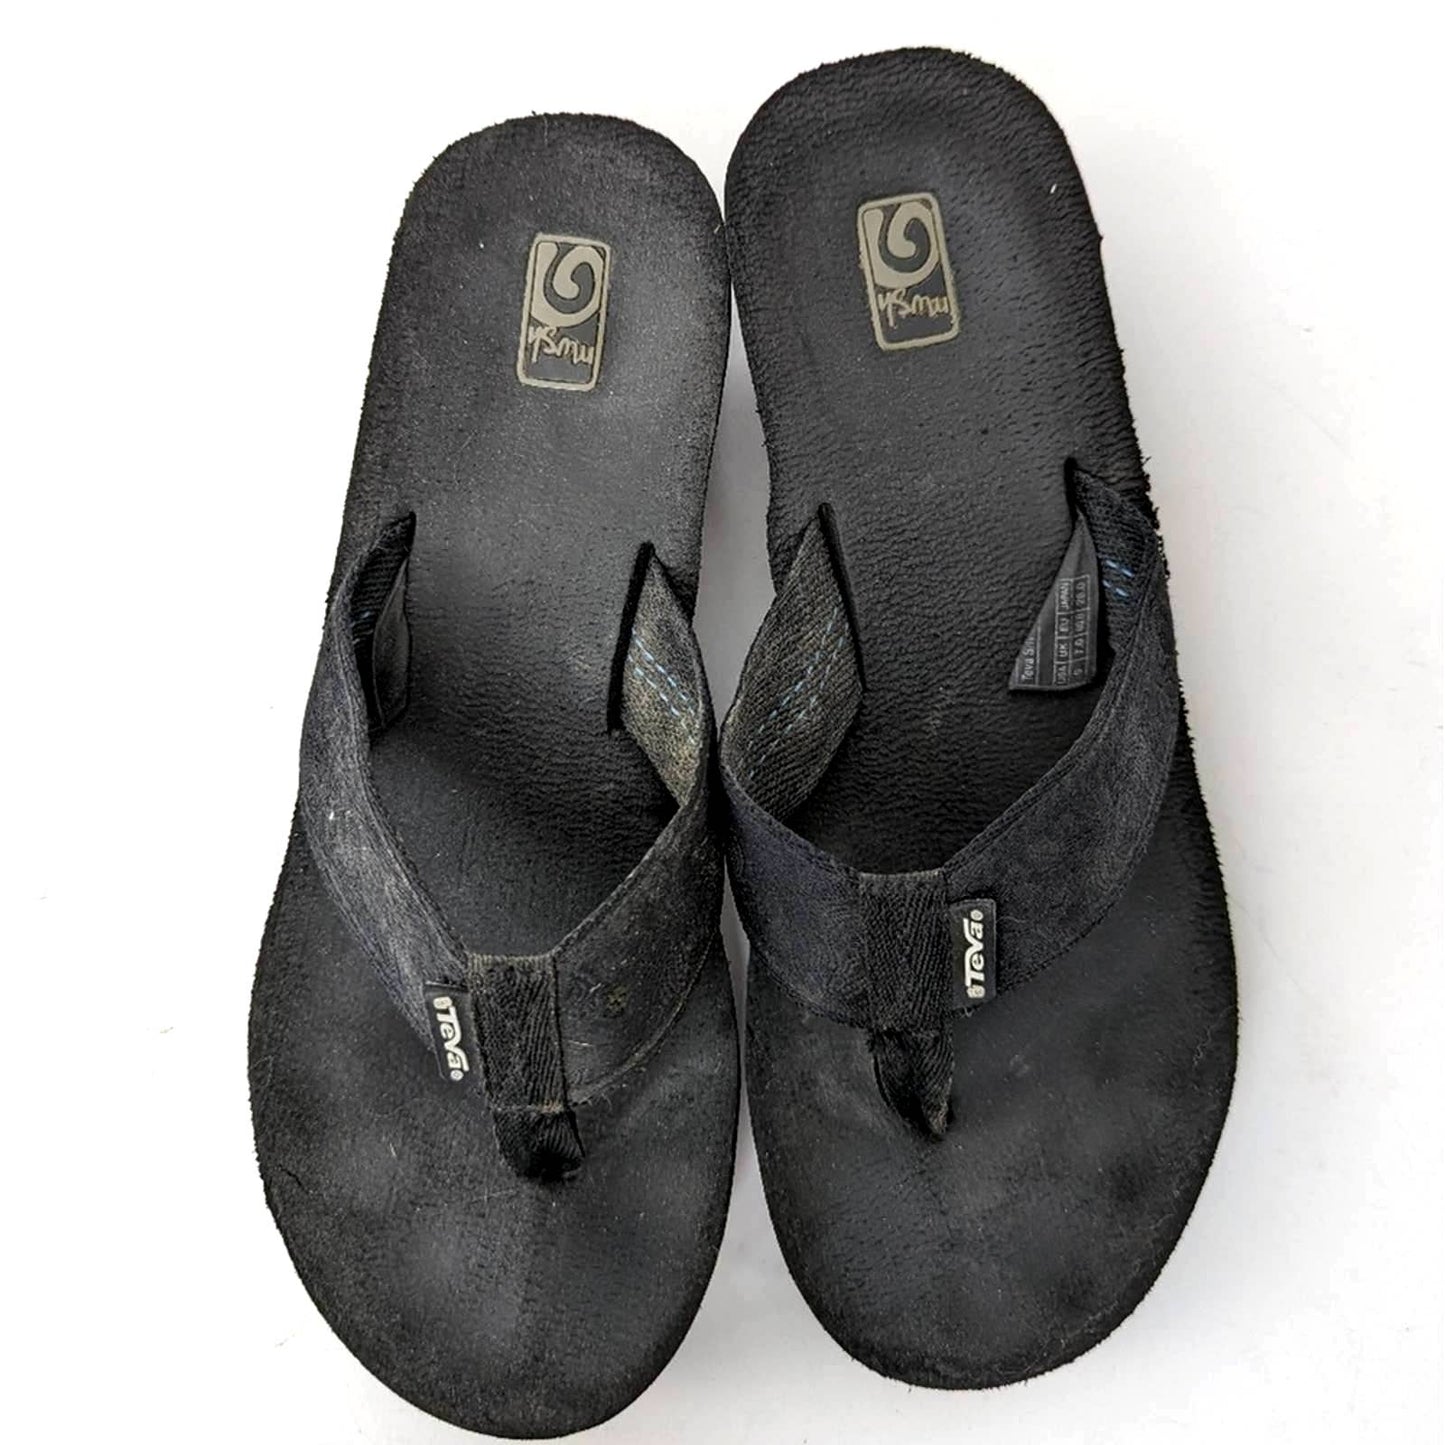 Teva Mush Black Wedge Flip Flop Sandals